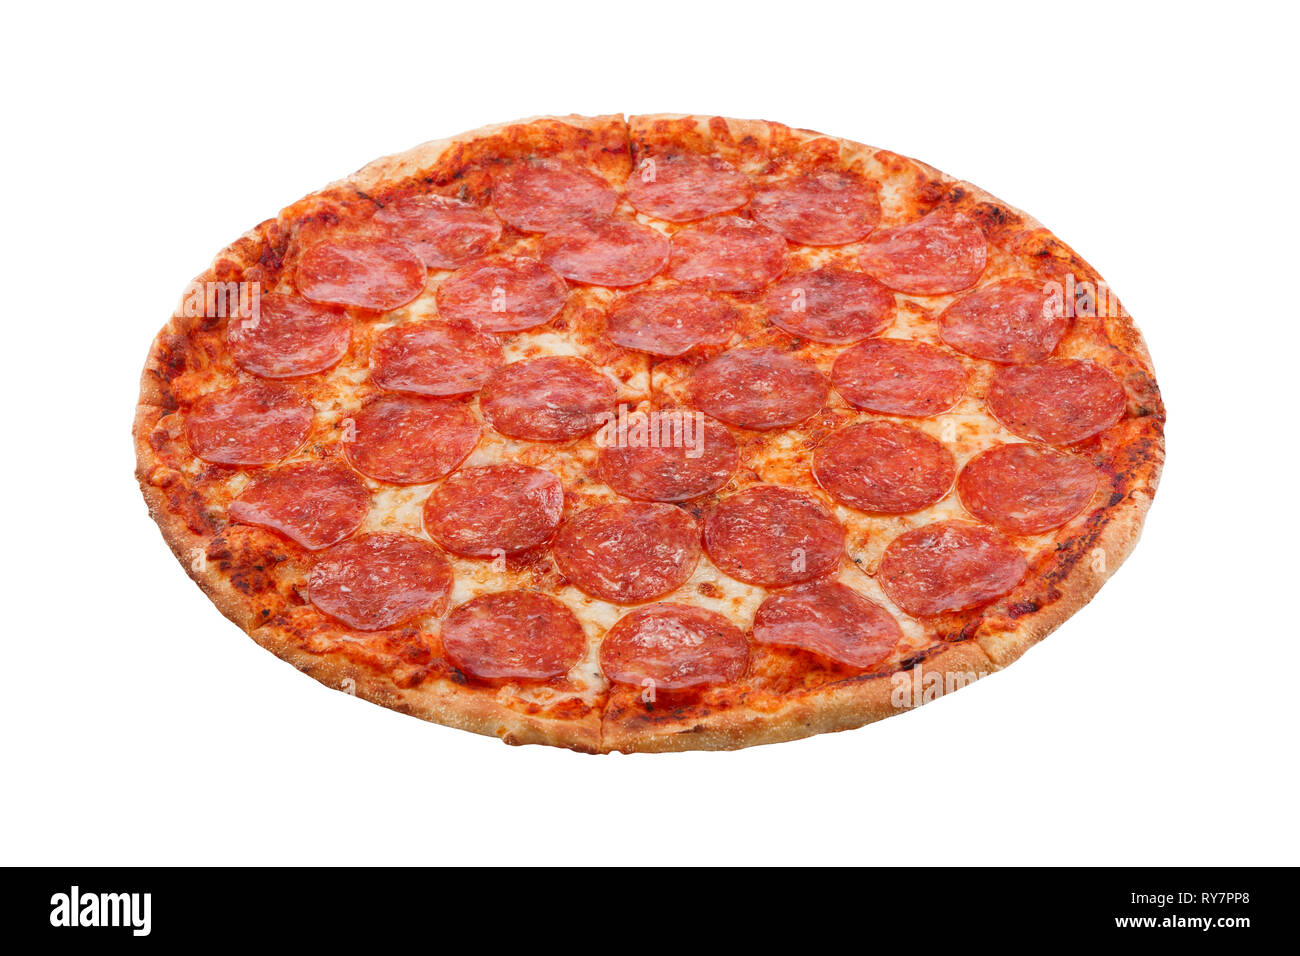 что такое пицца с двойным пепперони фото 105